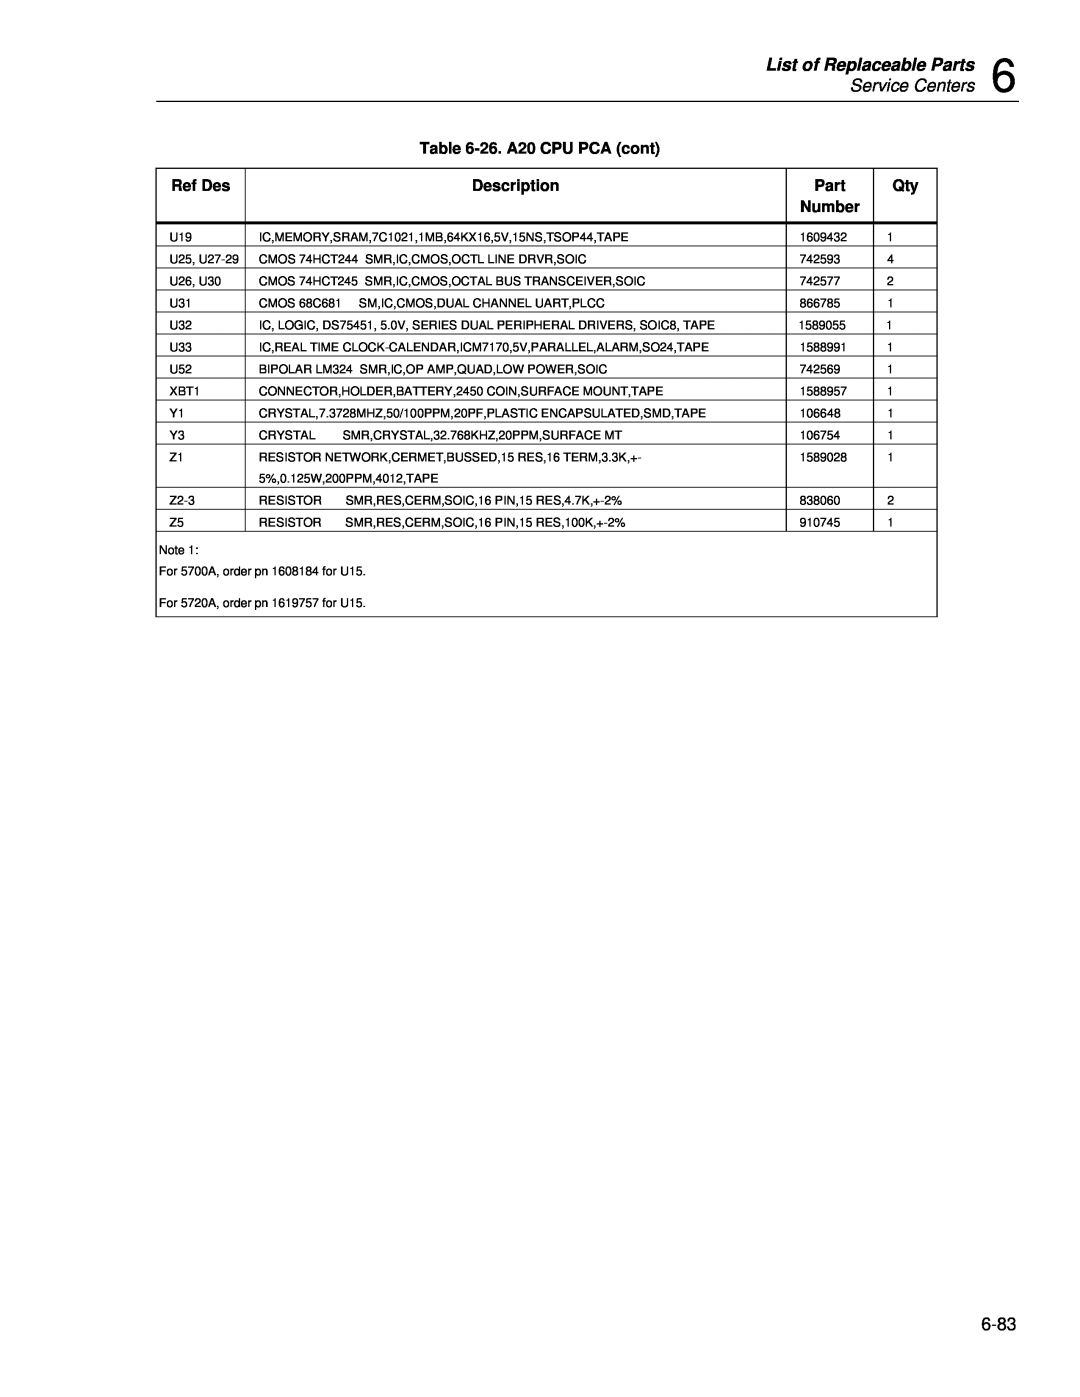 Fluke 5720A List of Replaceable Parts, Service Centers, 26. A20 CPU PCA cont, Ref Des, Description, Part Number 